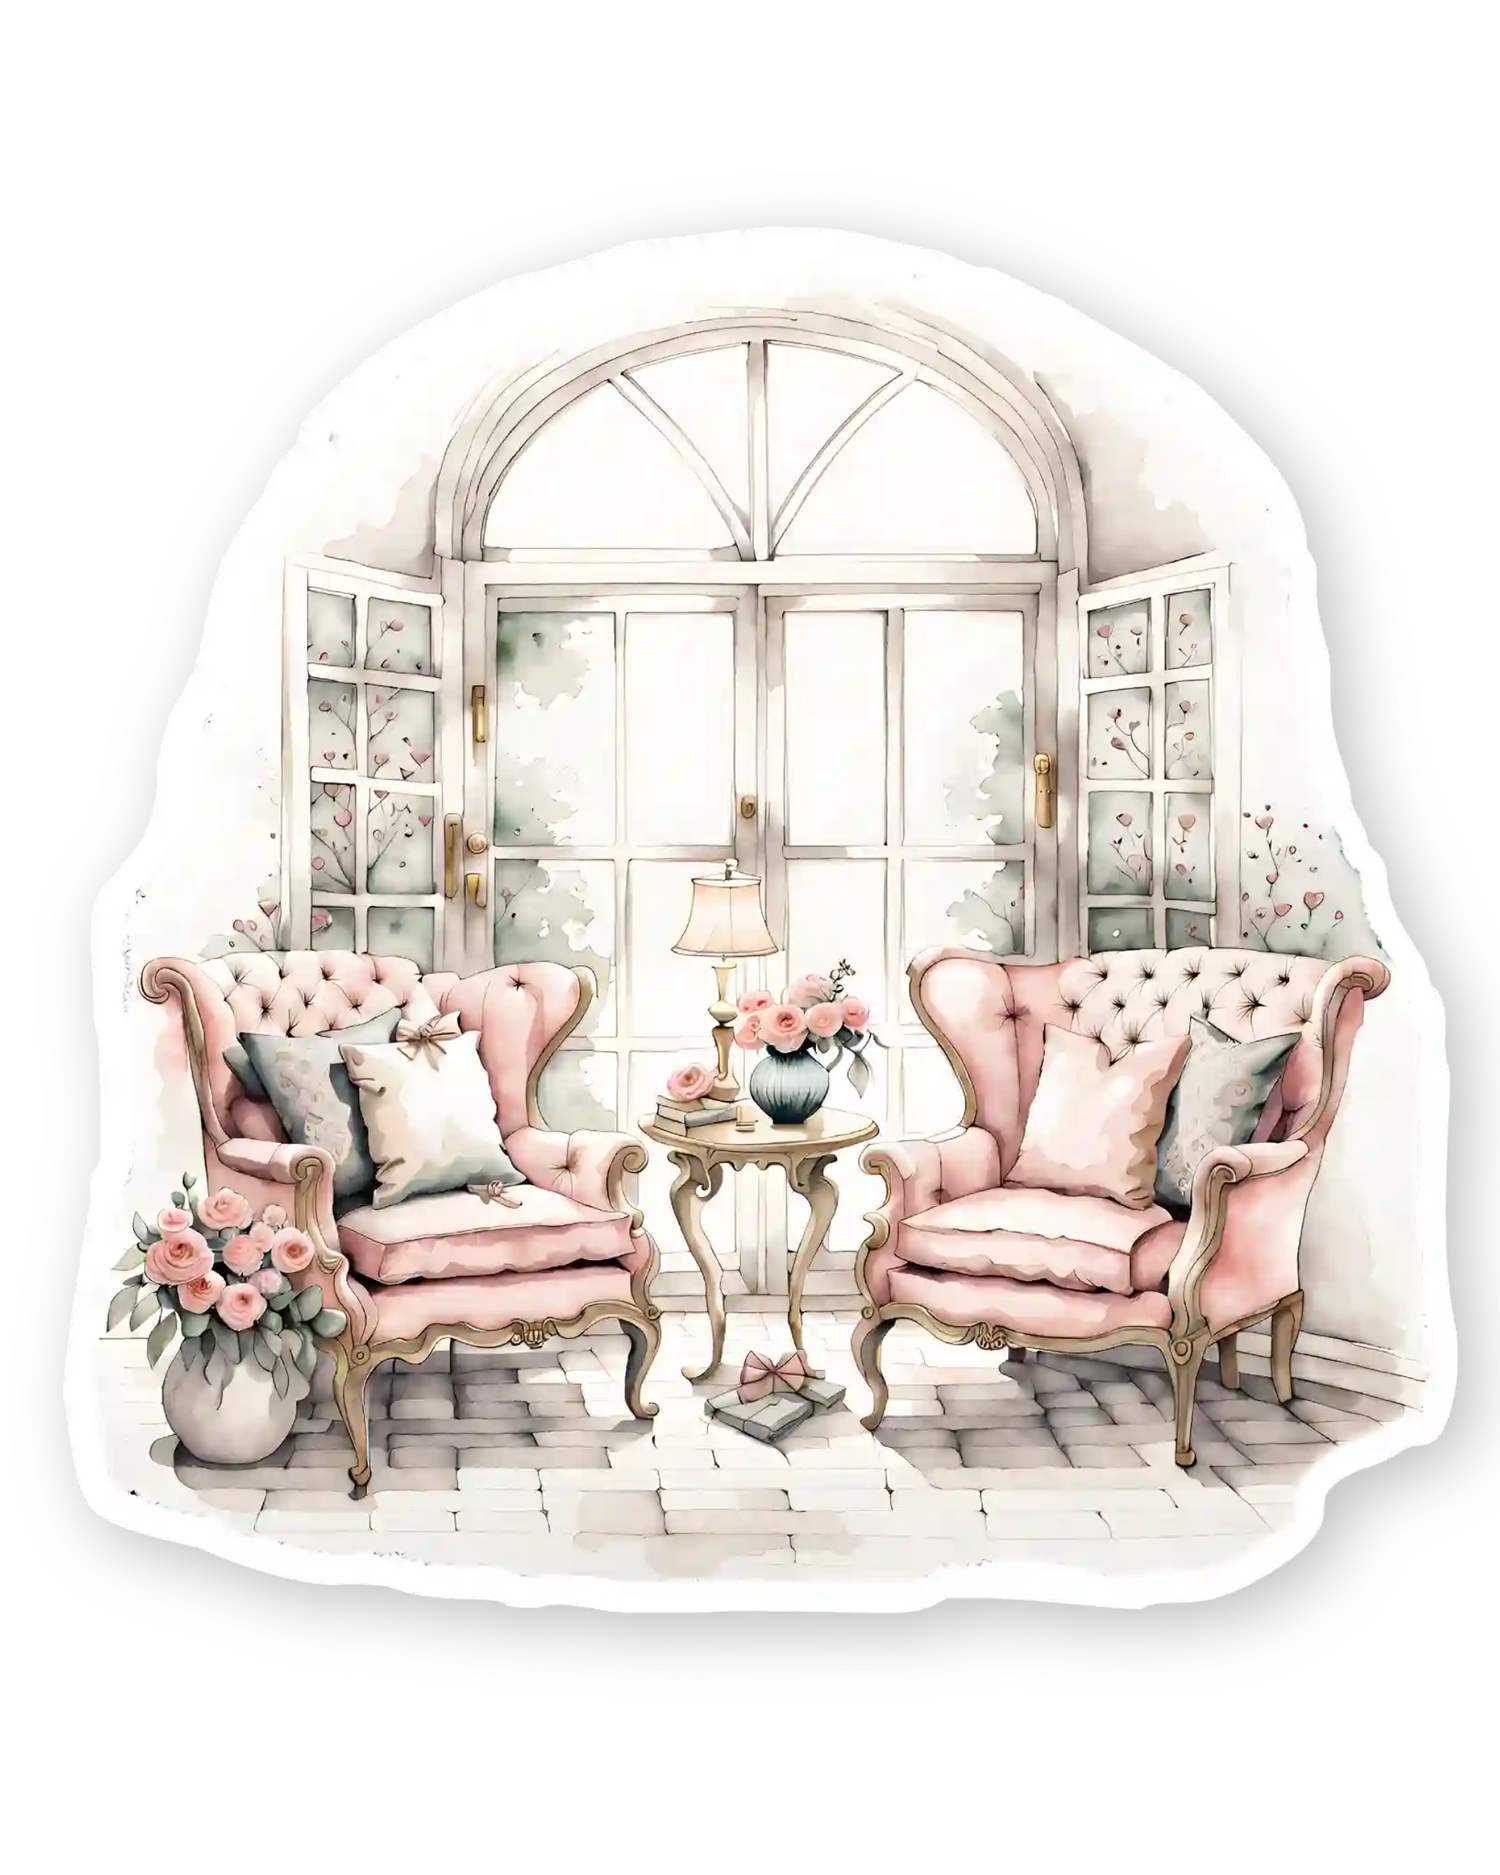 Set naljepnica za planer Everlasting, ilustracija pink fotelje pored otvorenog francuskog prozora